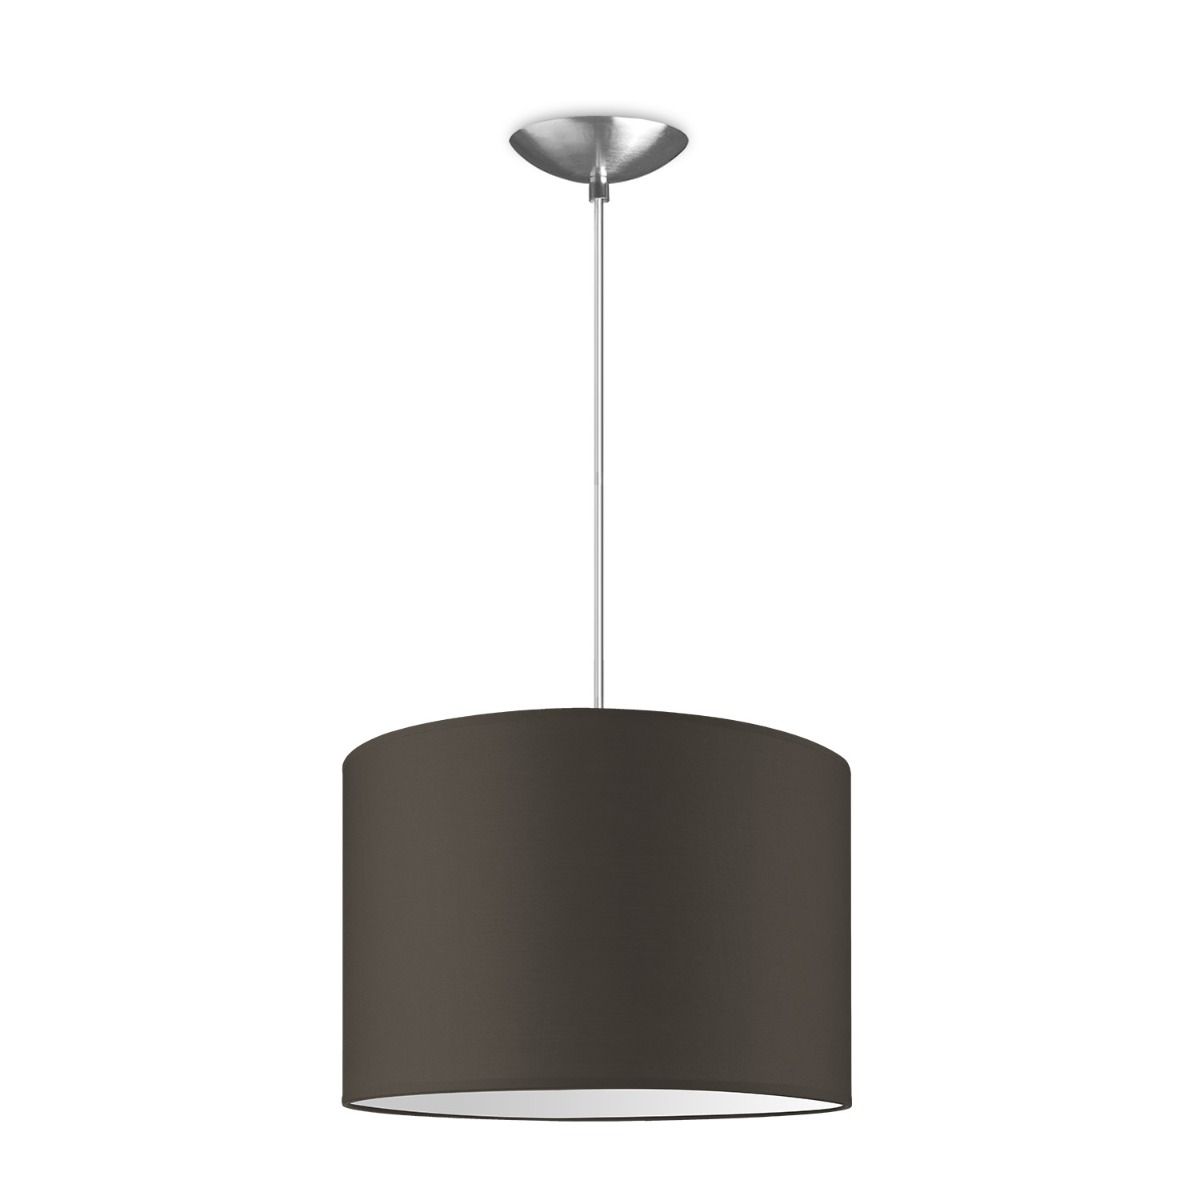 Light depot - hanglamp basic bling Ø 30 cm - taupe - Outlet